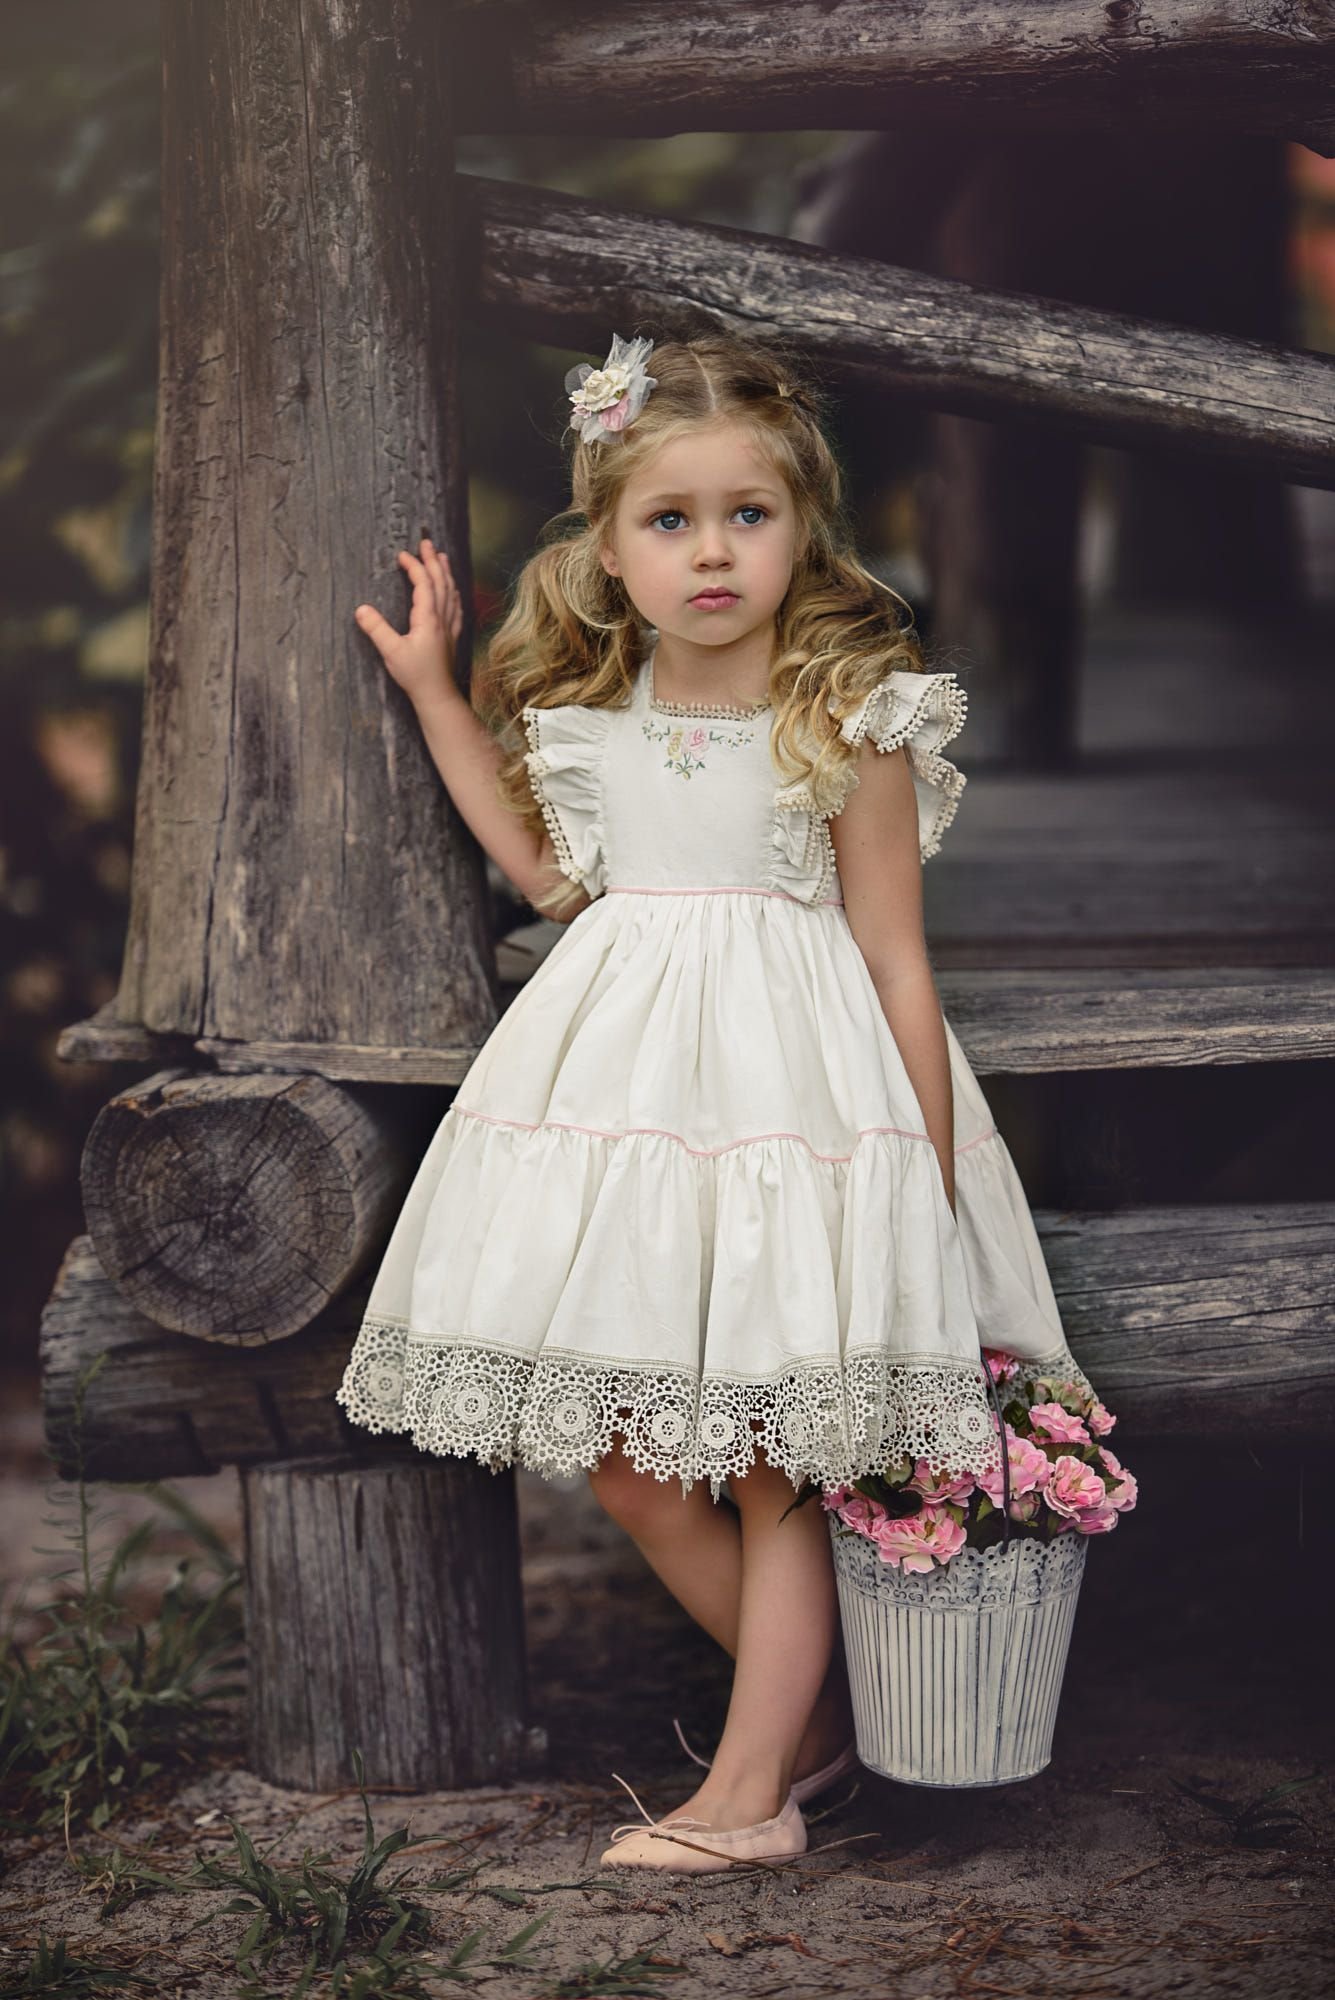 Красивые детские платья